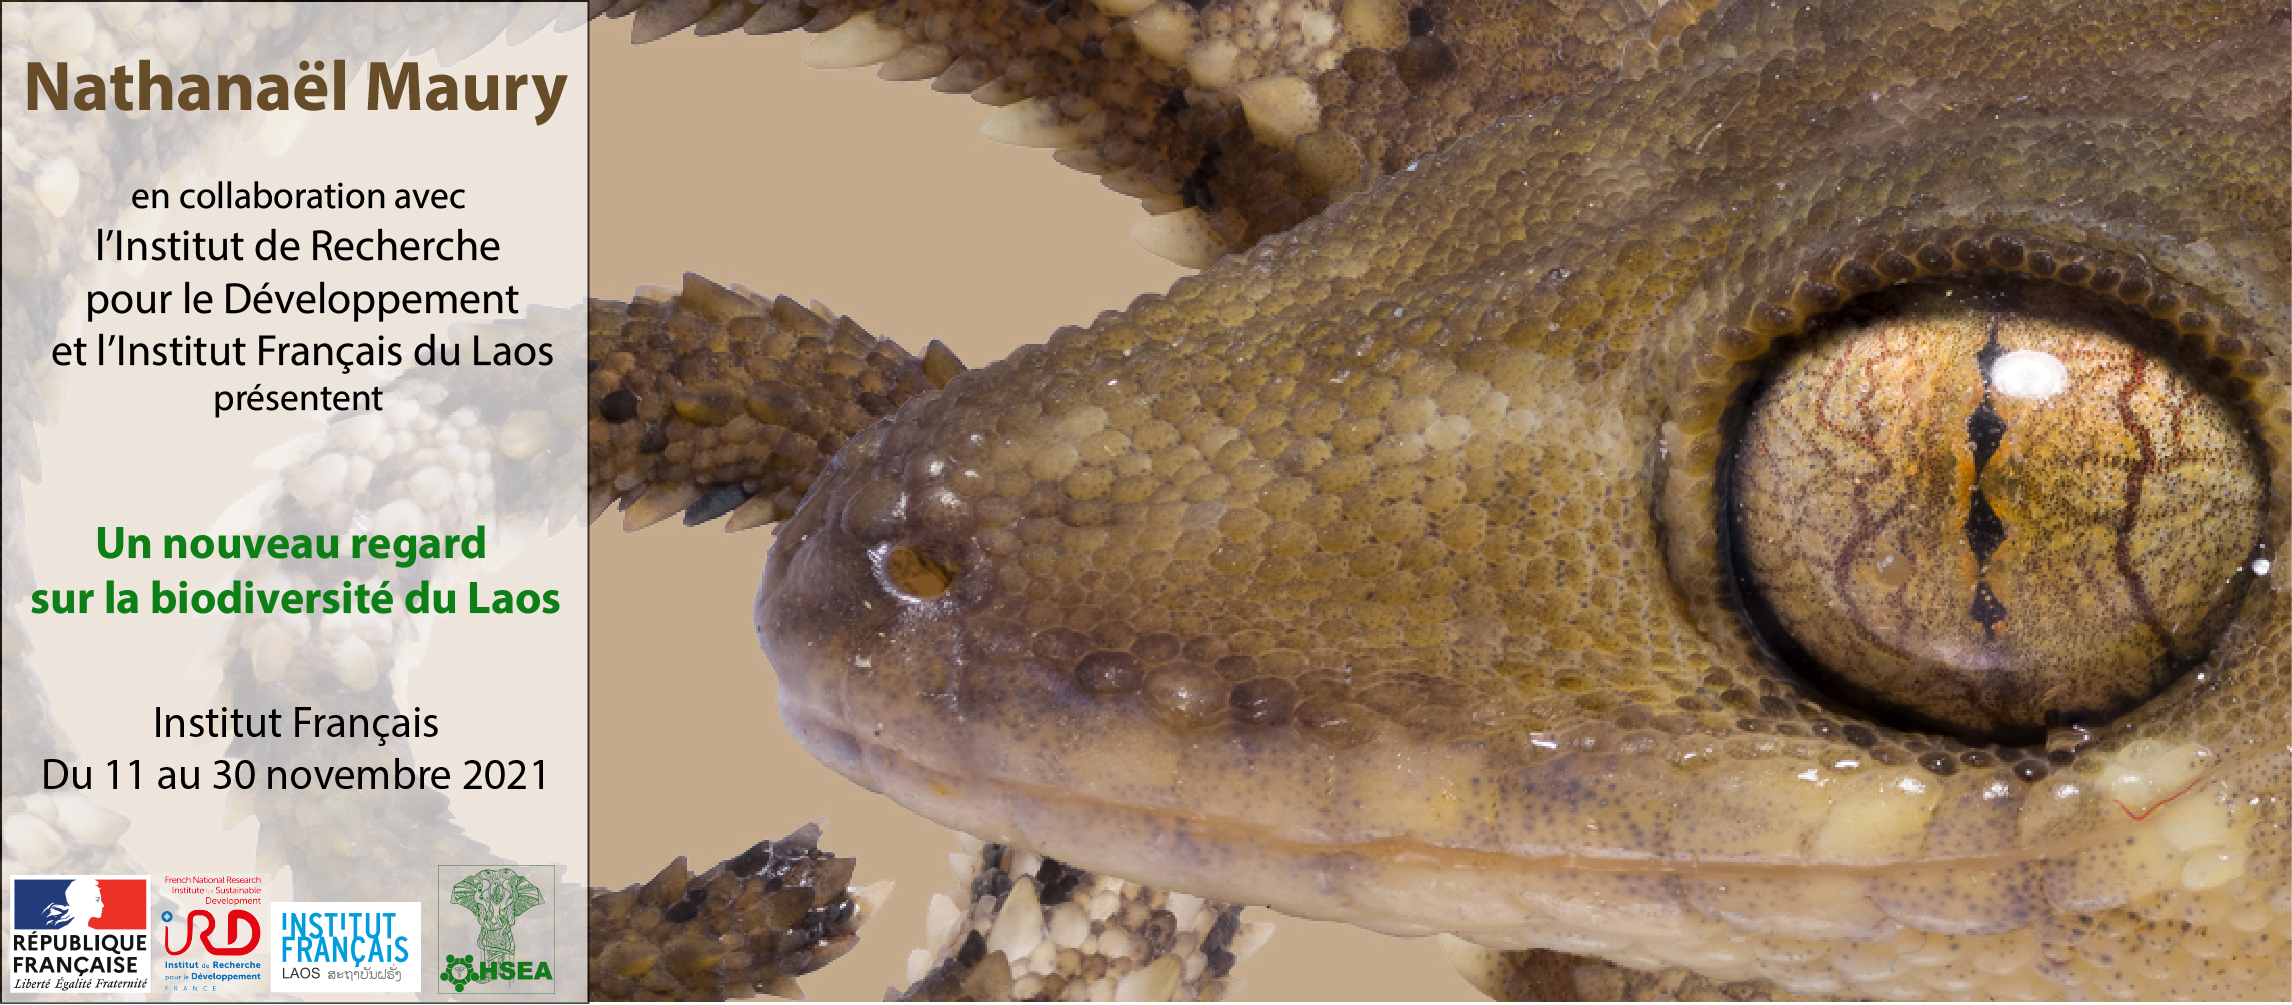 EXPOSITION DE NATHANAËL MAURY : Un aperçu de la richesse de la biodiversité des amphibiens et des reptiles du Laos